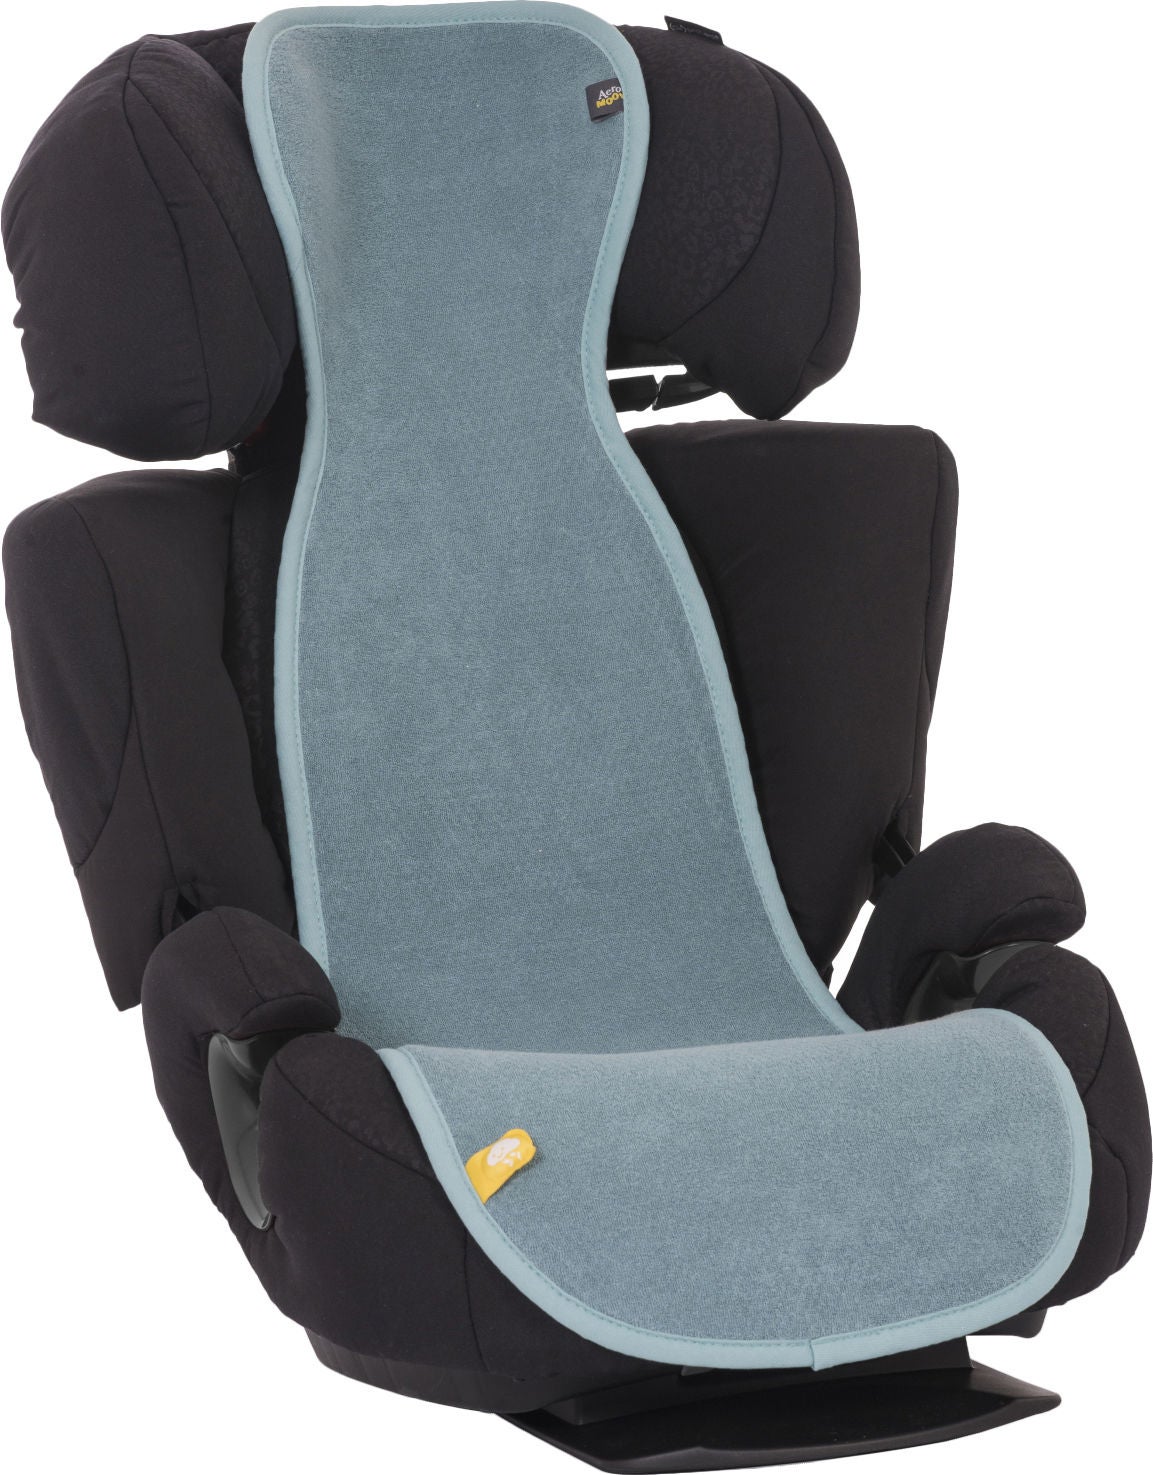 AeroMoov luftdurchlässige Sitzauflage für Kindersitz (15-36 kg), Mint von AeroMoov